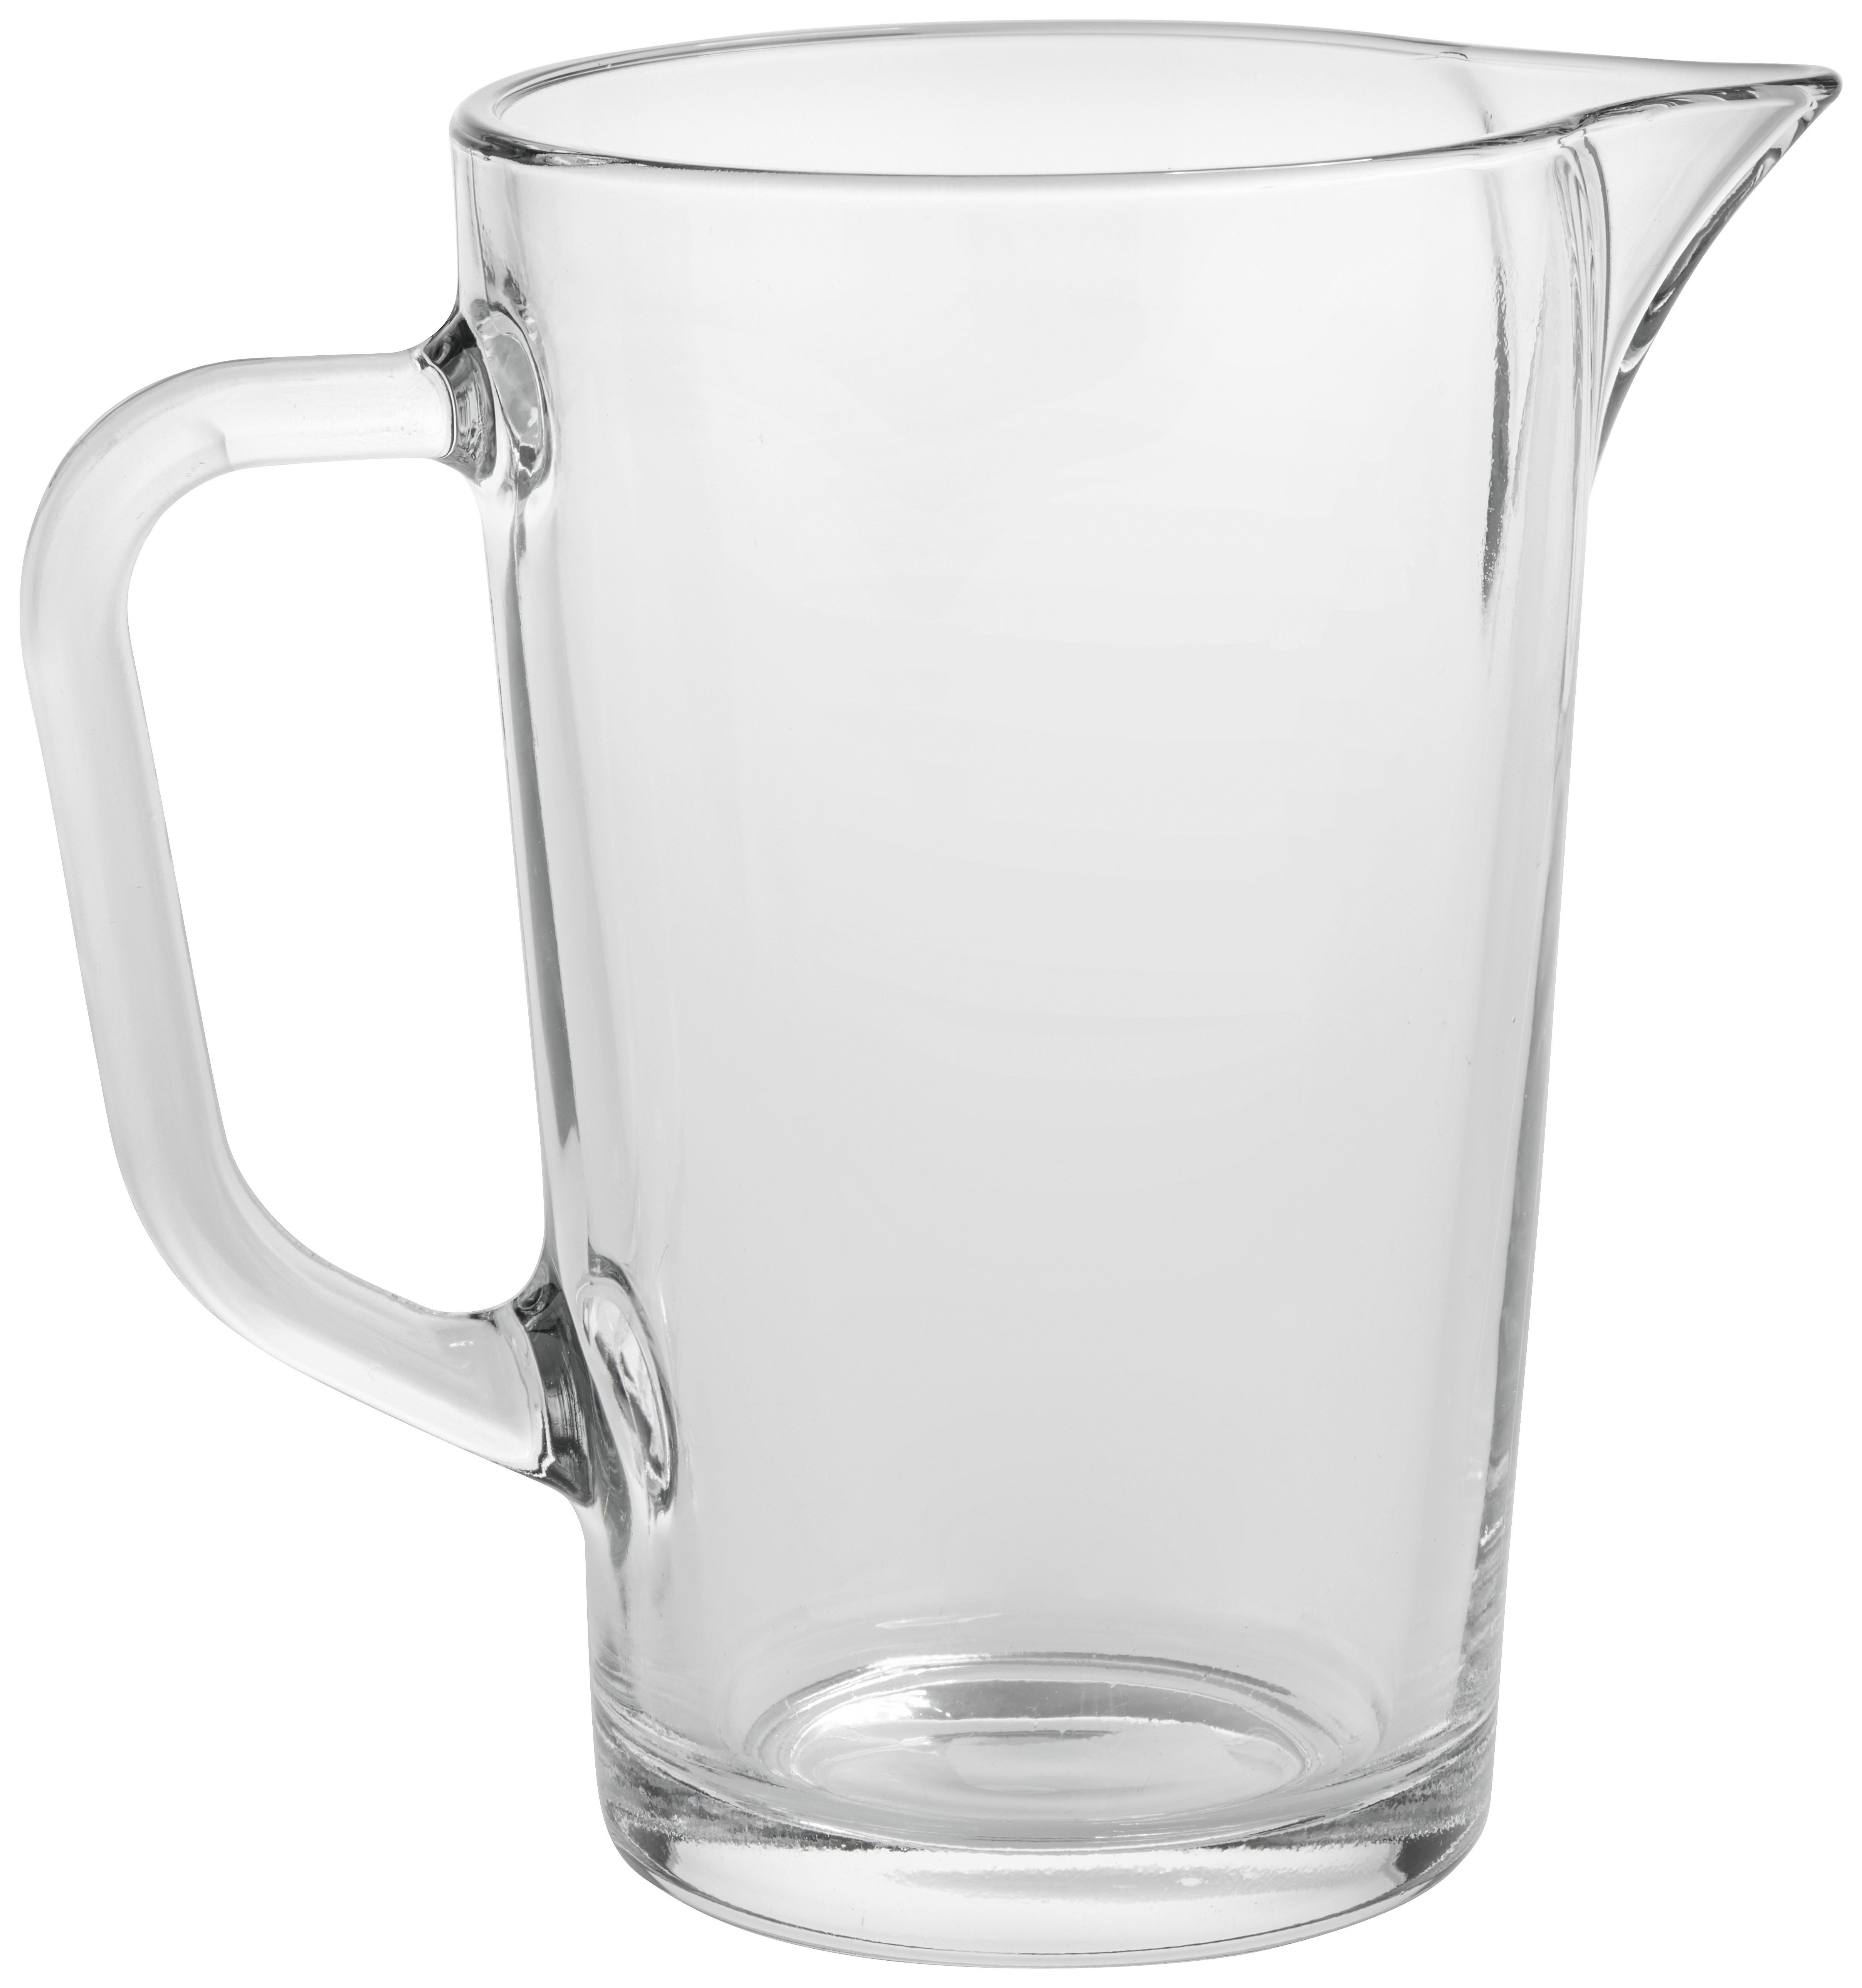 Glaskrug mit Ausgießer Claus, ca. 1,2 L - Klar, KONVENTIONELL, Glas (14/19cm) - Luca Bessoni